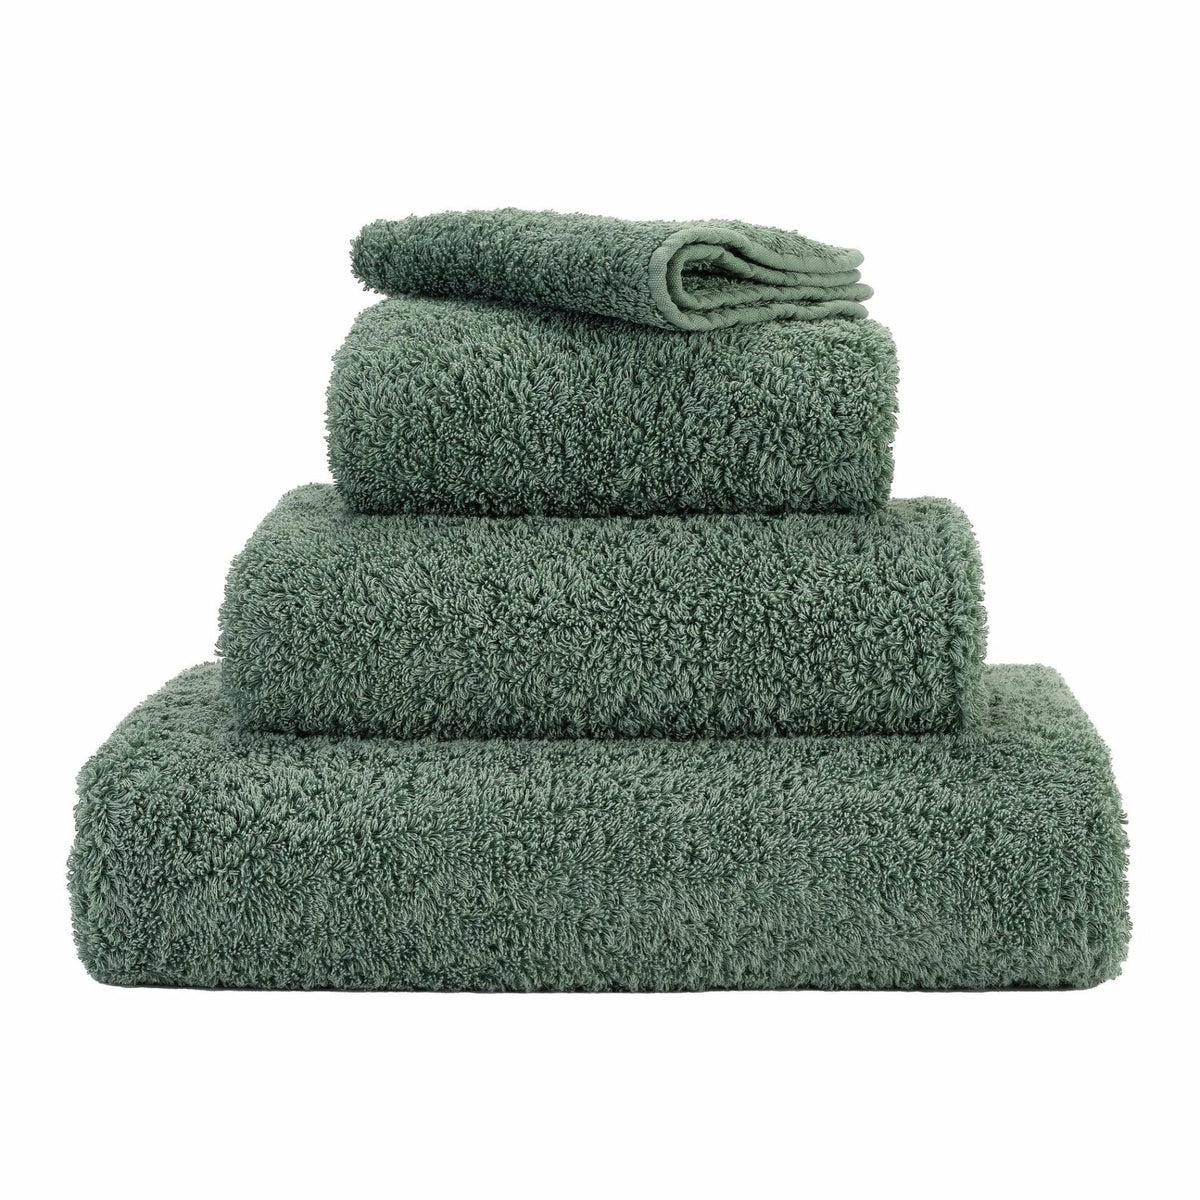 https://flandb.com/cdn/shop/products/Abyss-Super-Pile-Bath-Towels-Ever-Green_40b05176-6fd0-4833-bc1d-a289f863a4bd_1200x.jpg?v=1666343476